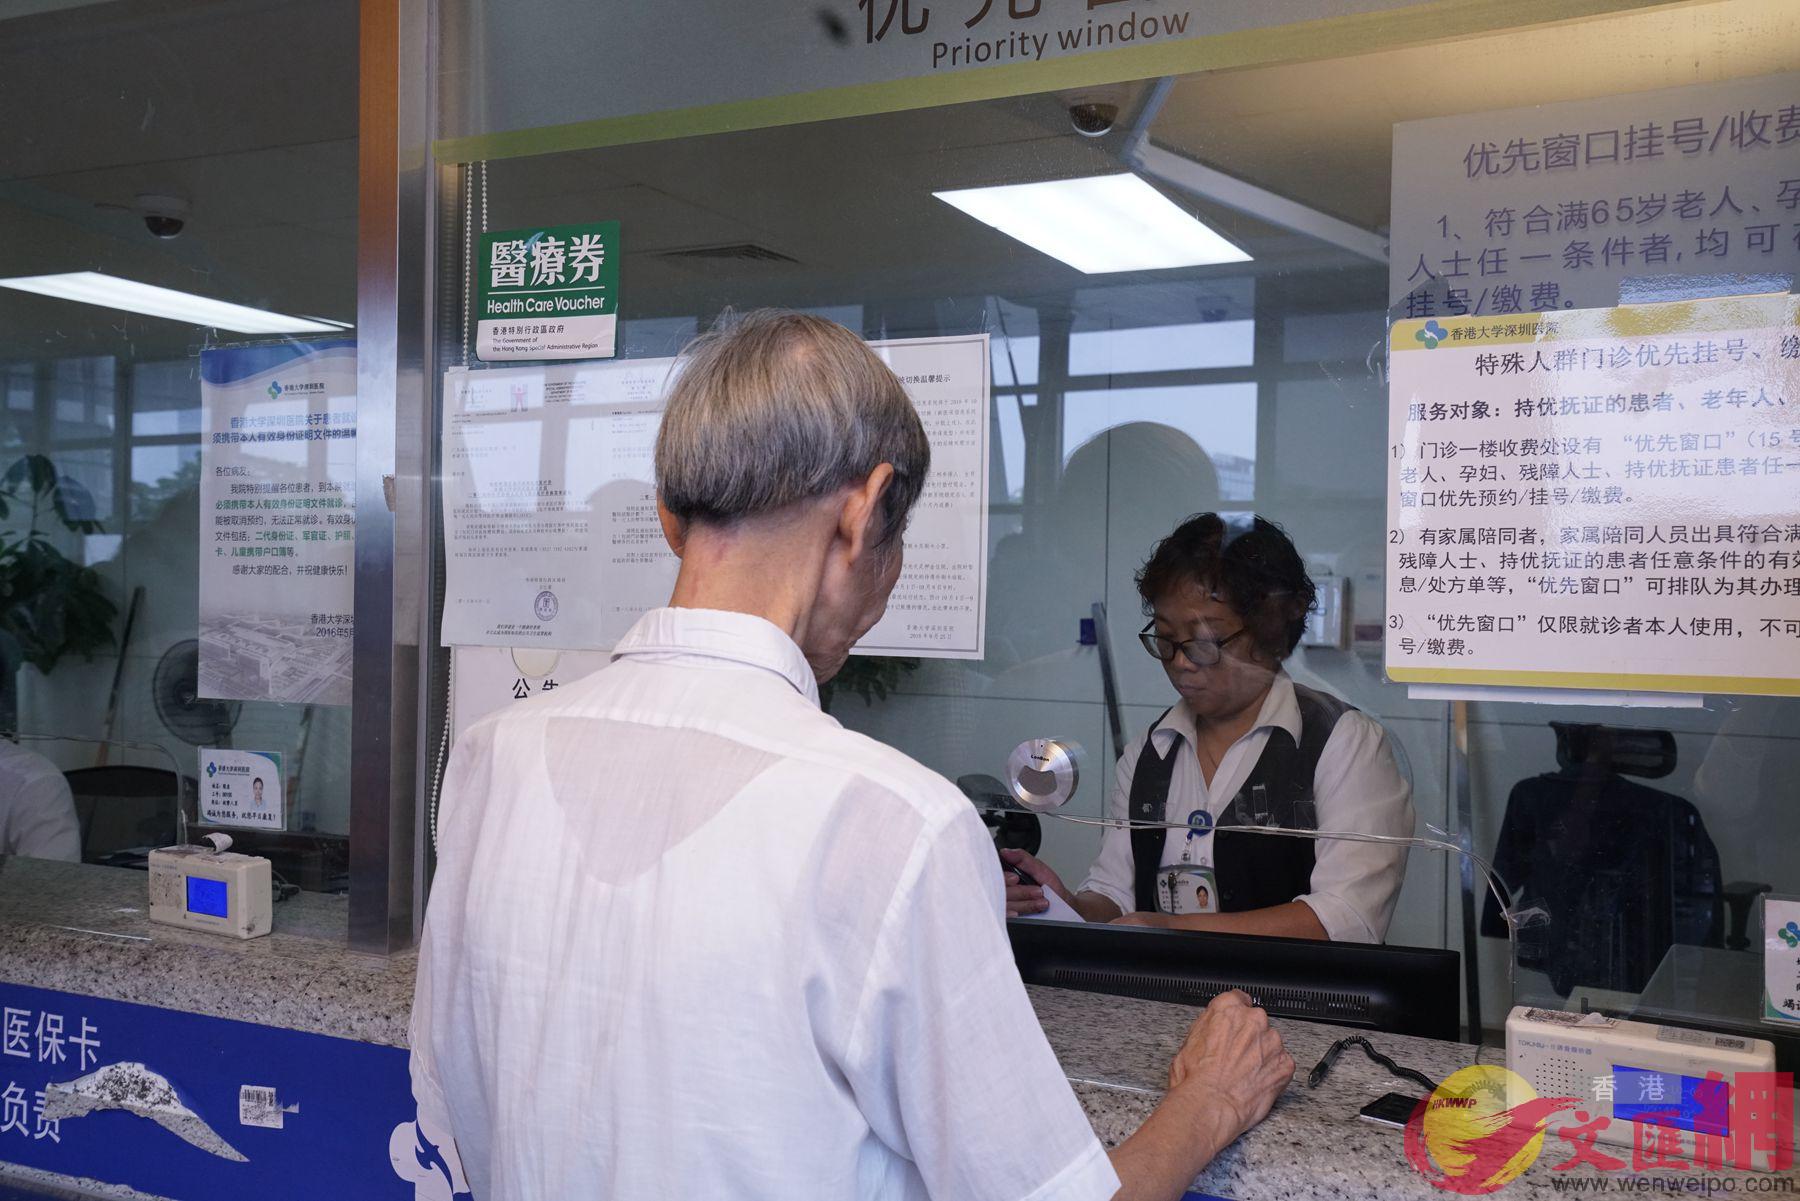 一位香港長者在港大深圳醫院使用長者醫療券支付門診費用(記者 石華 攝)